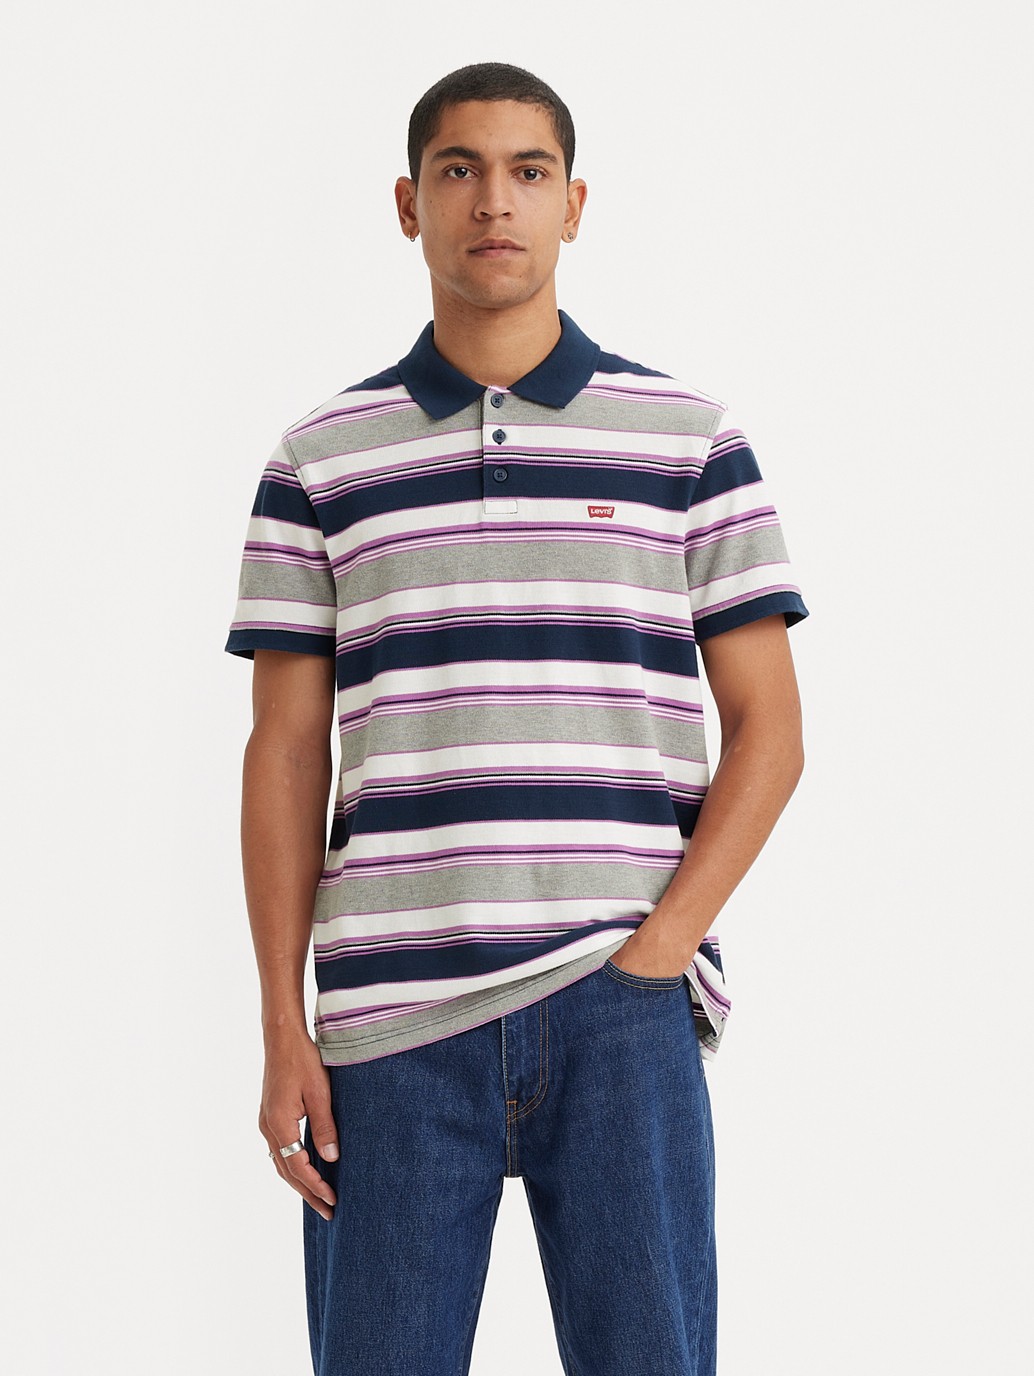 Buy Levi's® Men's Housemark Polo Shirt| Levi’s® Official Online Store PH